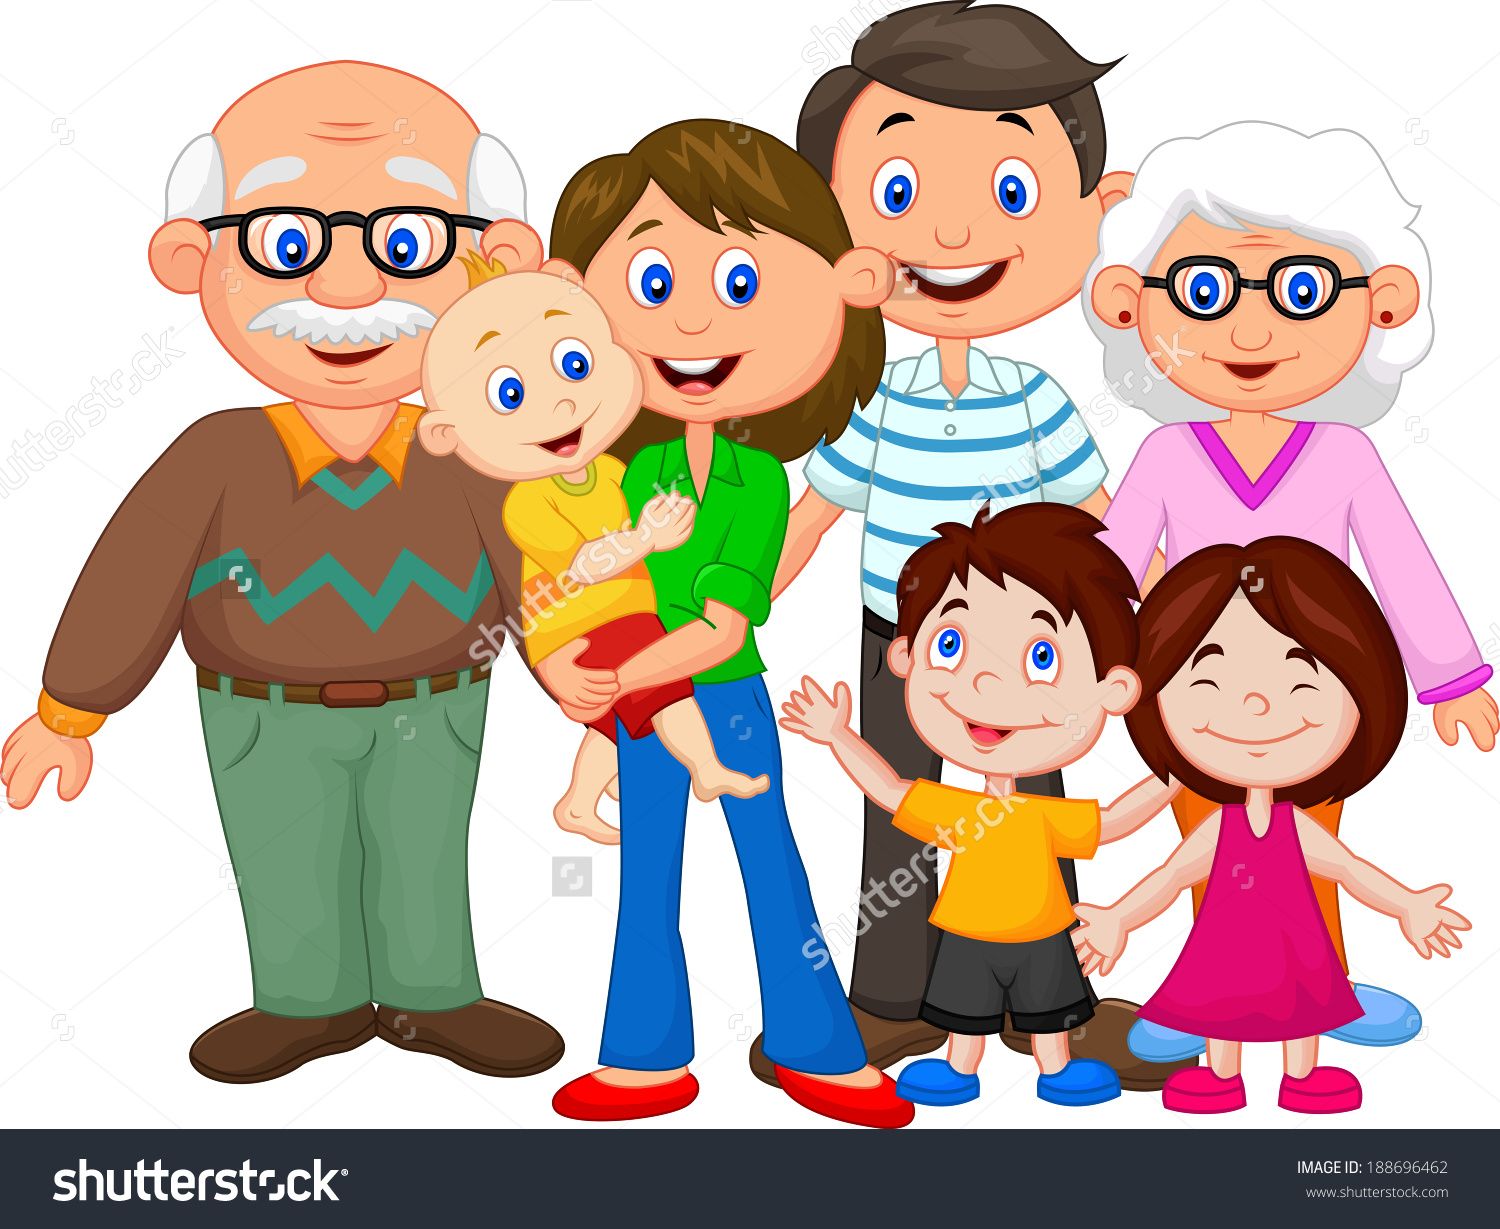 clipart family cartoon